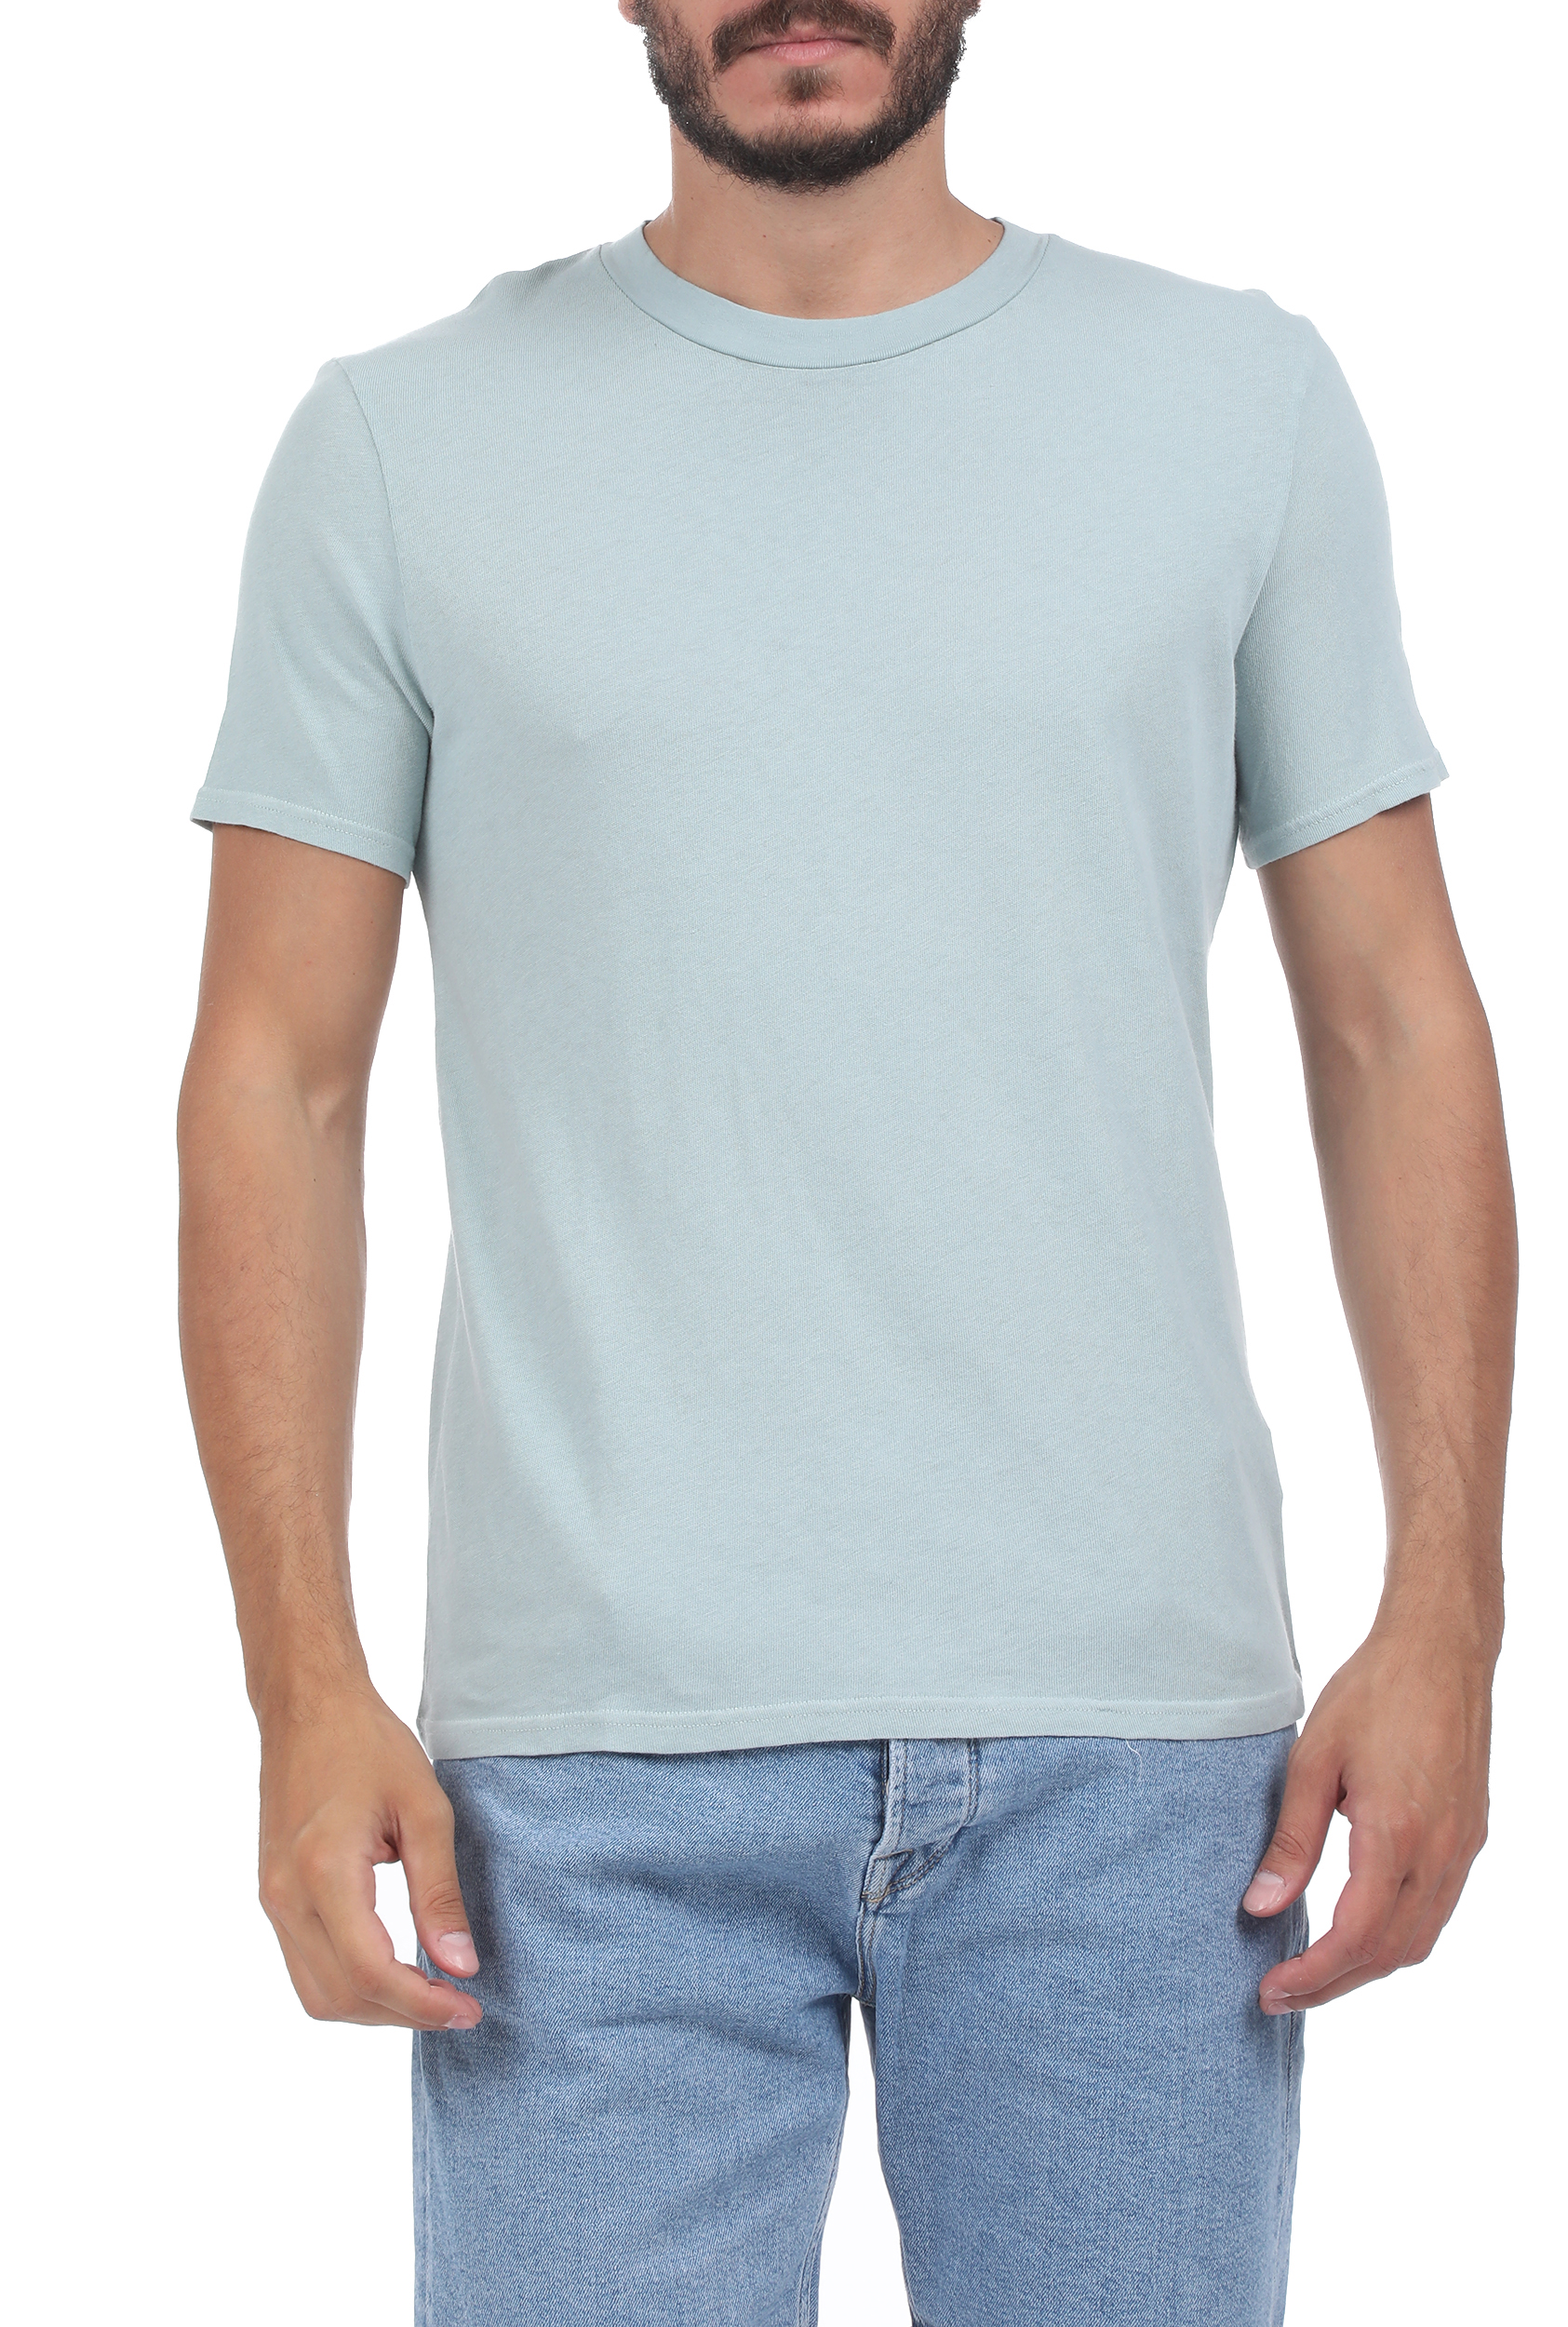 Ανδρικά/Ρούχα/Μπλούζες/Κοντομάνικες AMERICAN VINTAGE - Ανδρικό t-shirt AMERICAN VINTAGE γαλάζιο